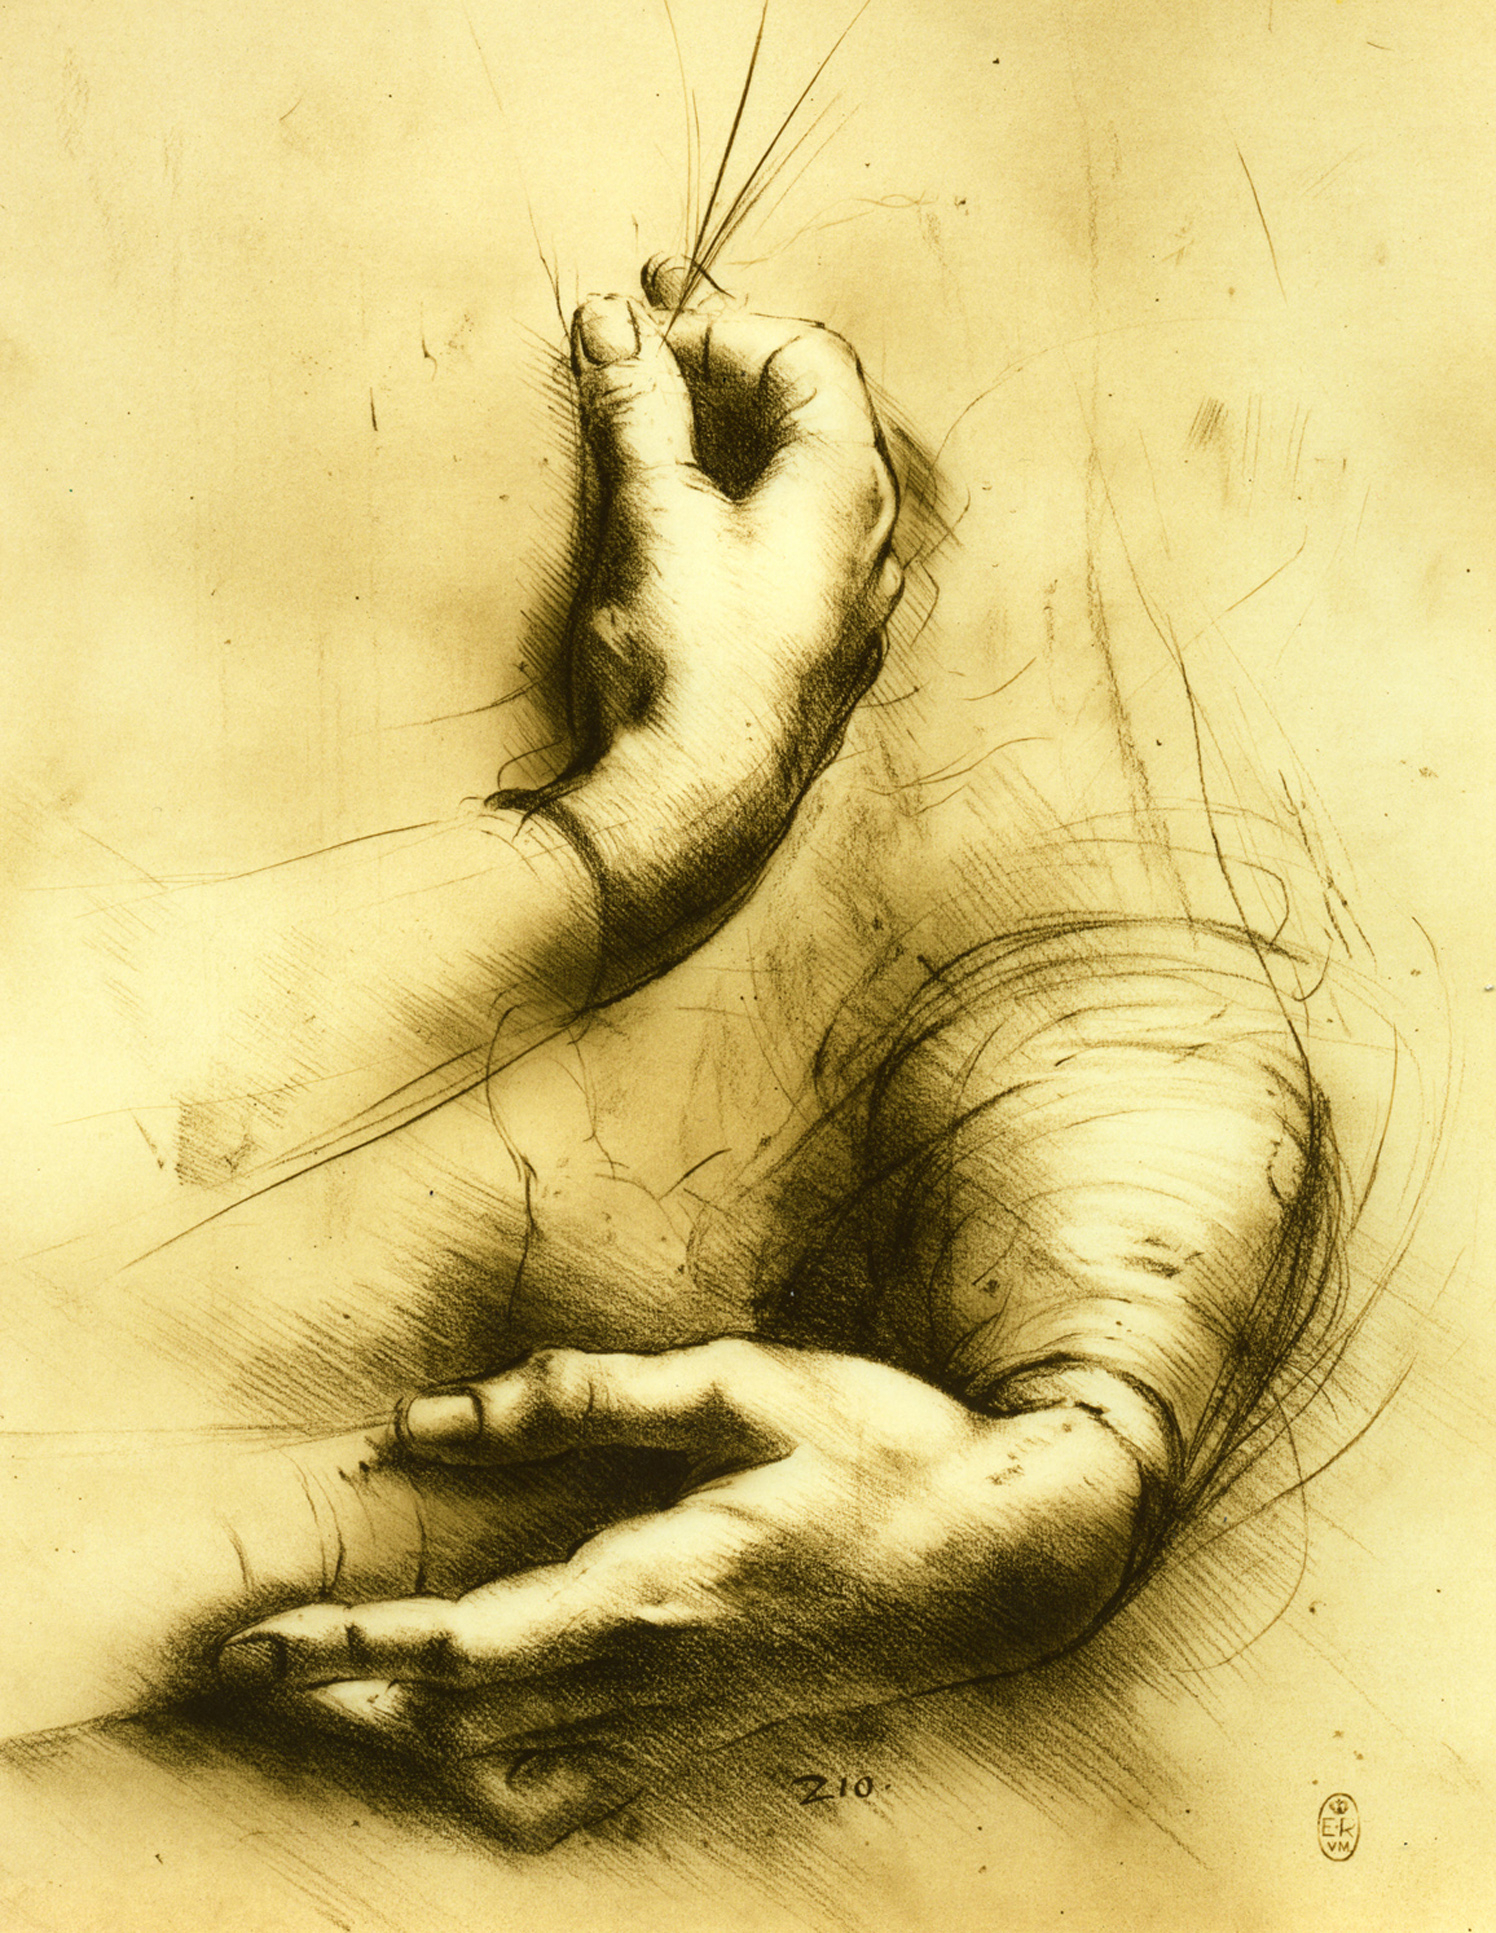 Da Vinci Hands